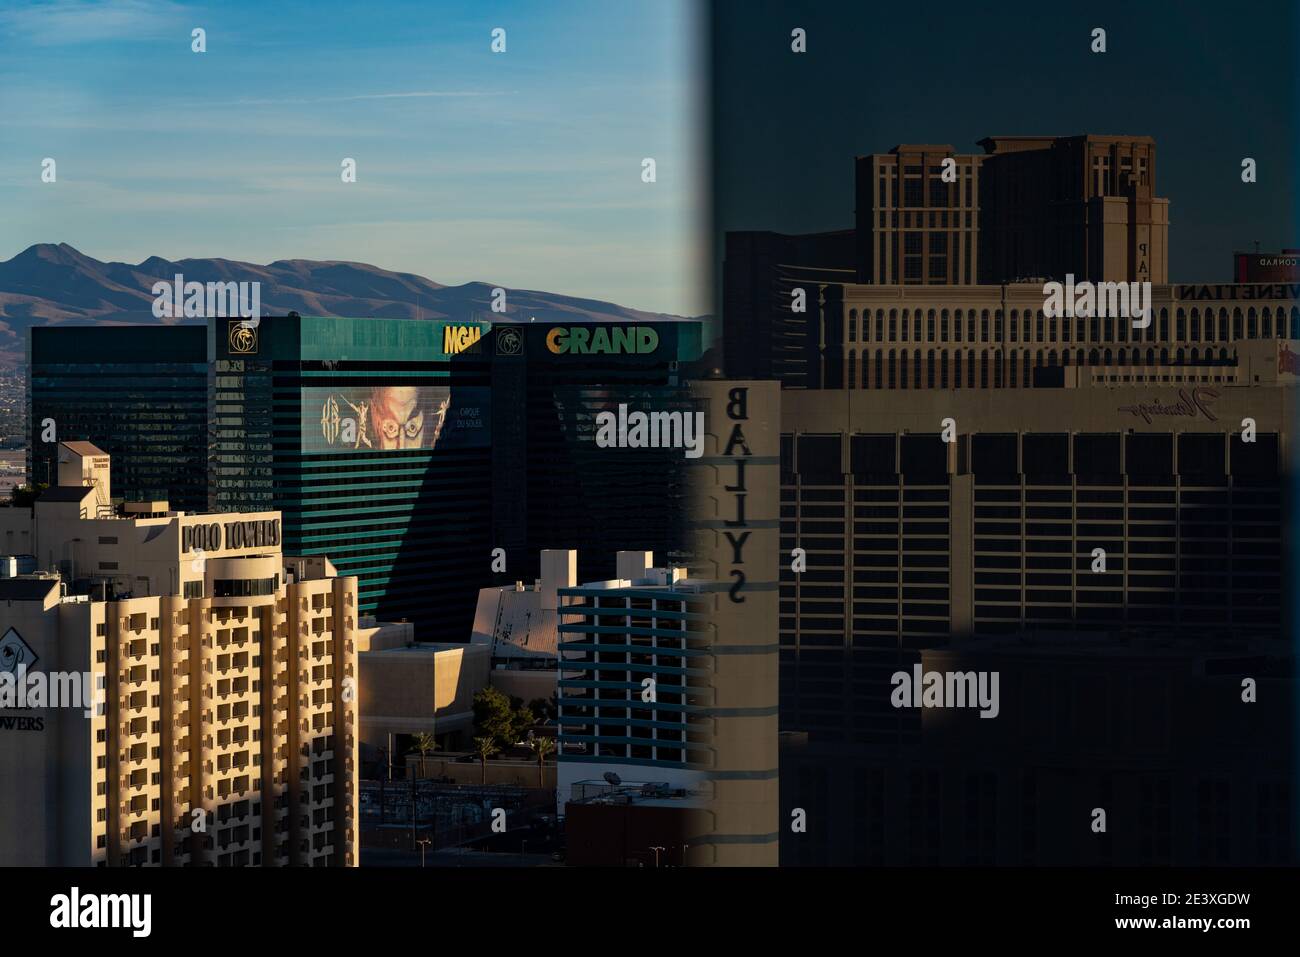 El MGM Grand se ve desde un balcón en el Cosmopolitan de las Vegas con Bally's, Flamingo, Venetian, y Palazzo reflejados en el vidrio Foto de stock